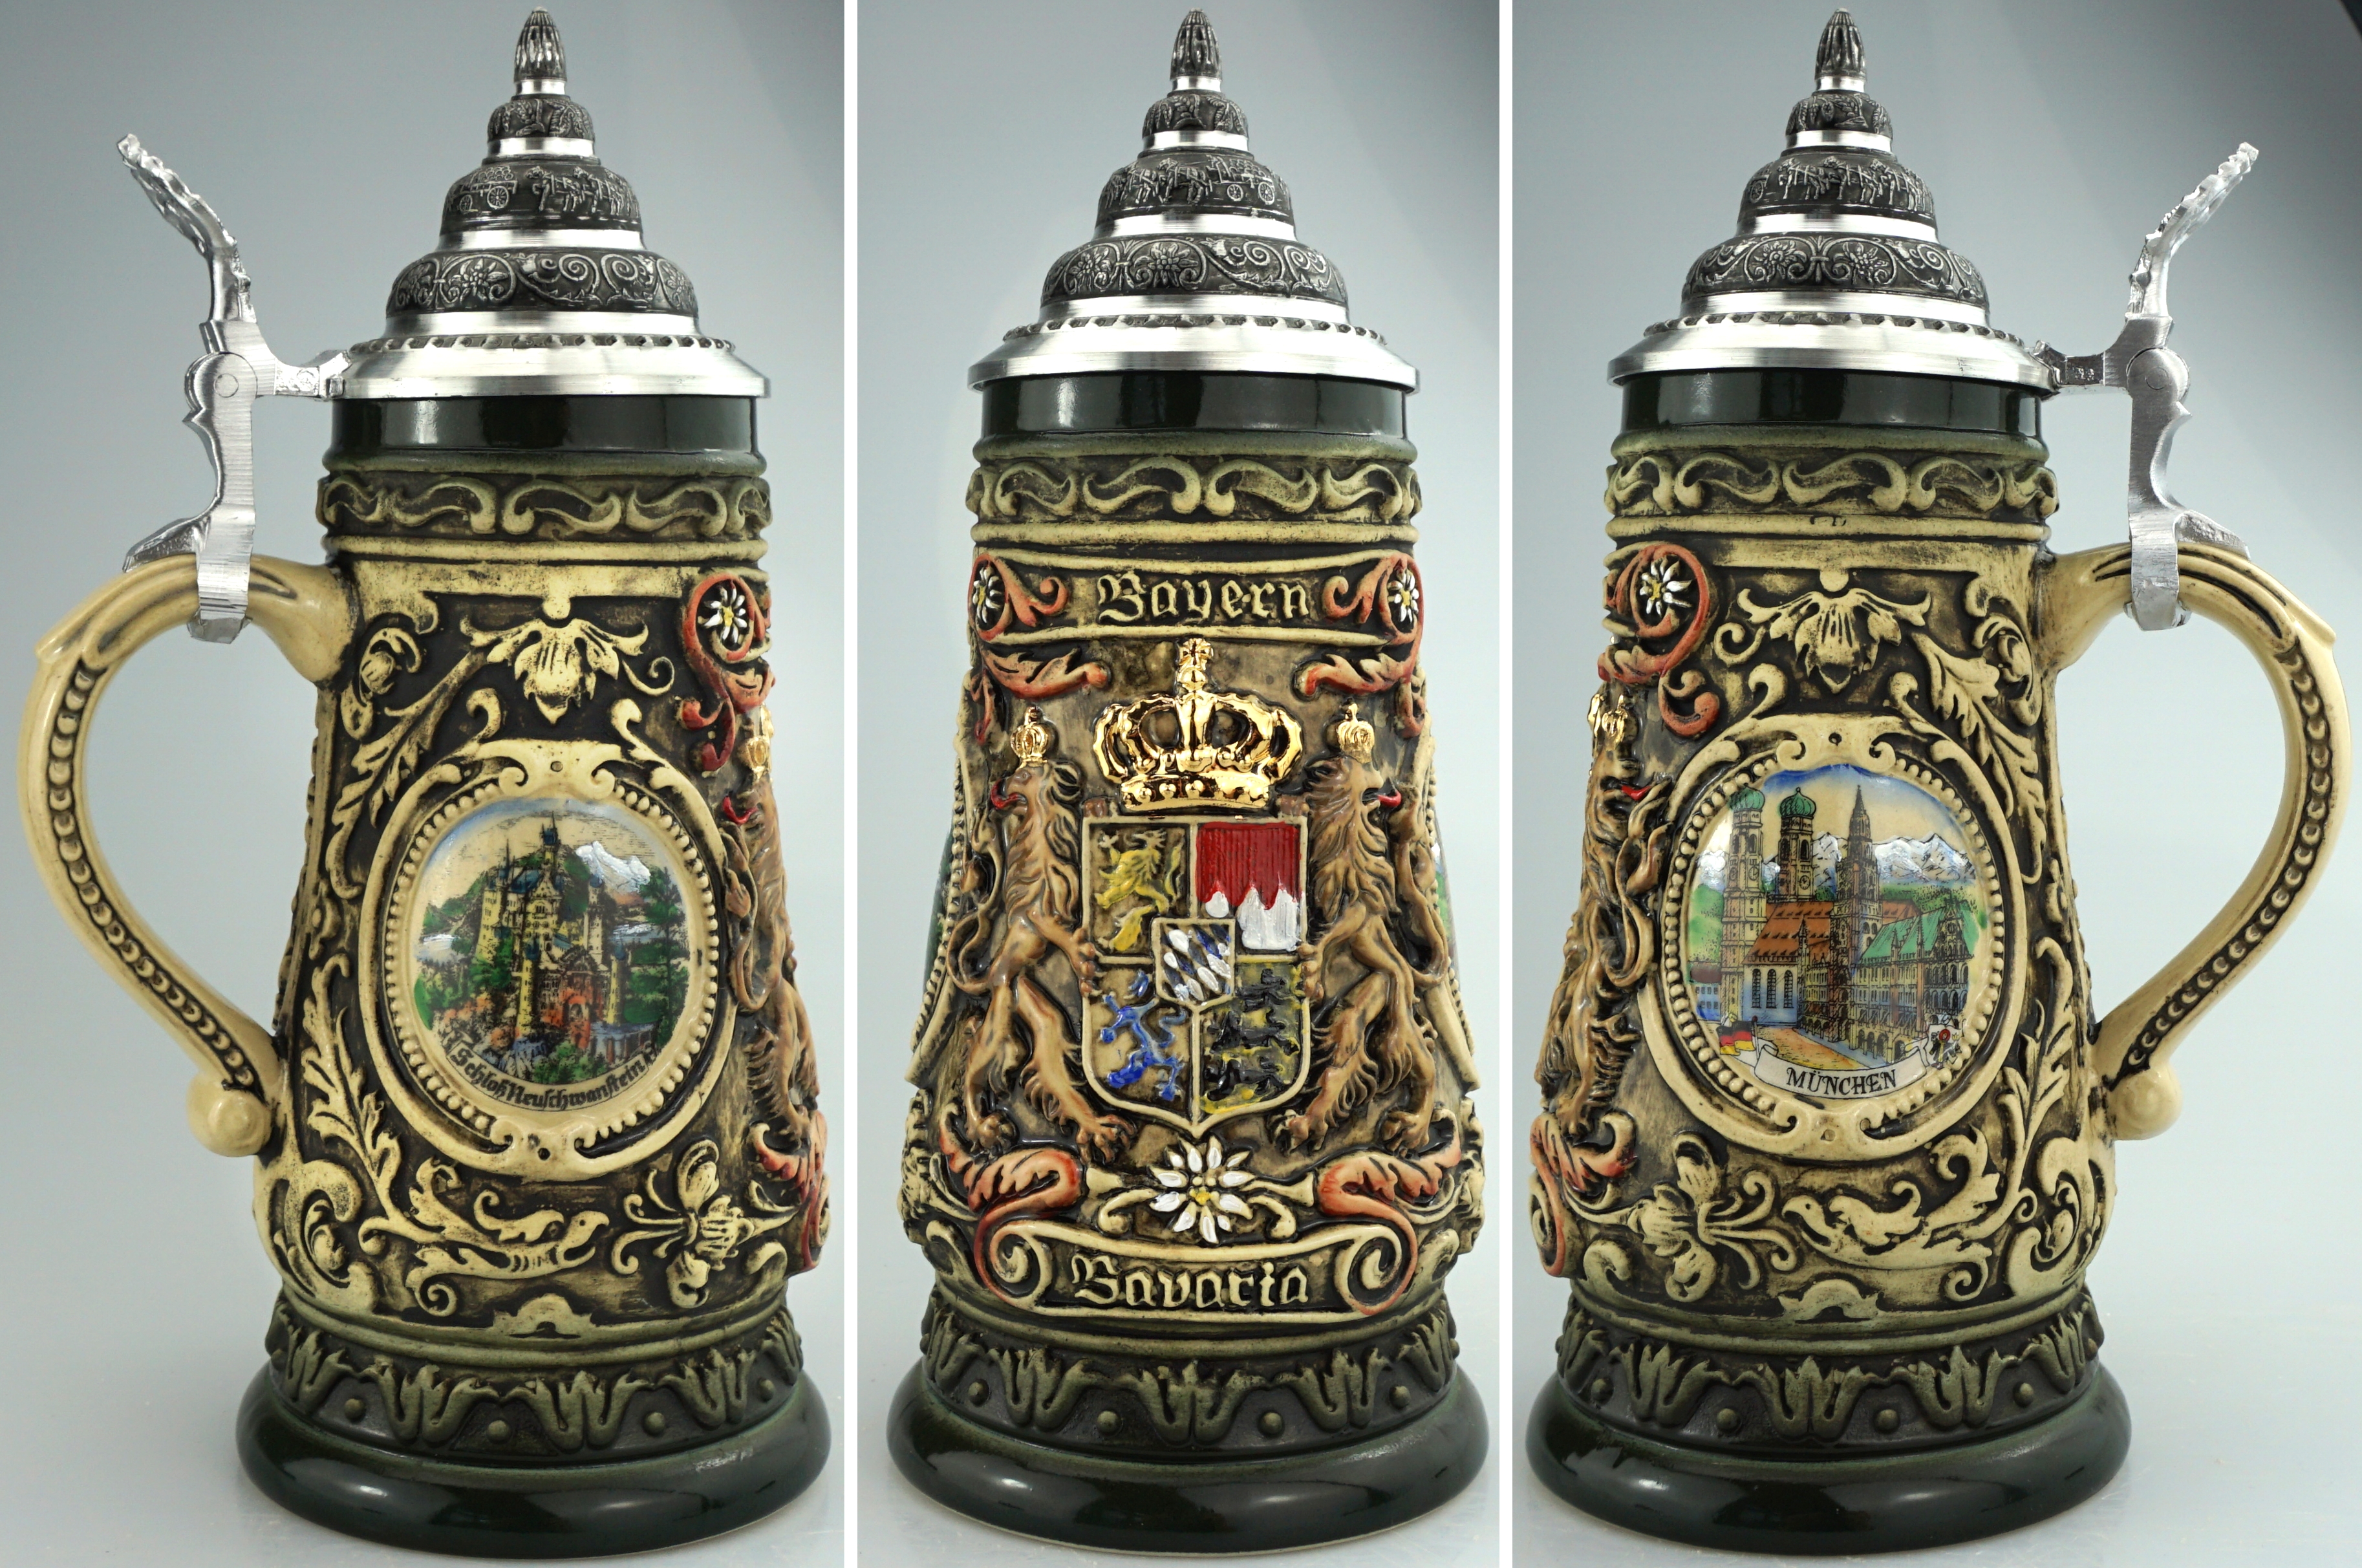 Bayern Krug 0,4 Liter, Rustika handbemalt, Seitenmotive Neuschwanstein bzw Oberammergaumit Zinndeckel